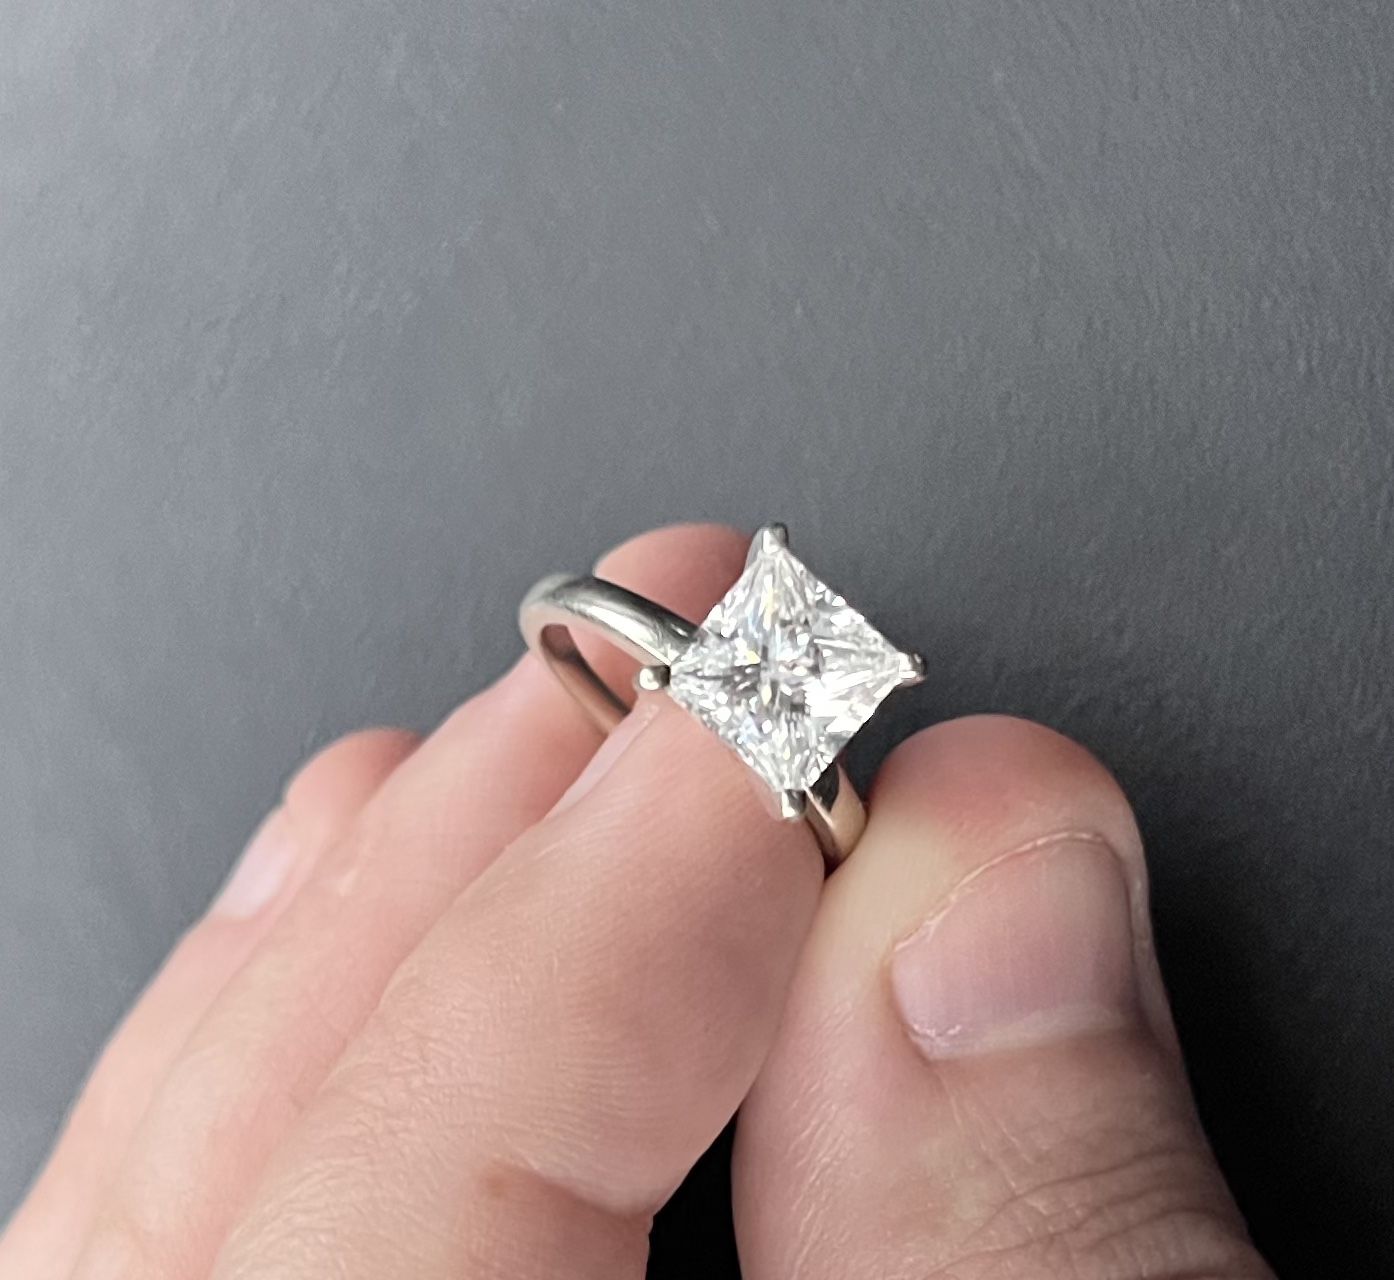 Wedding Ring. 14k White Gold and A moissanite gem